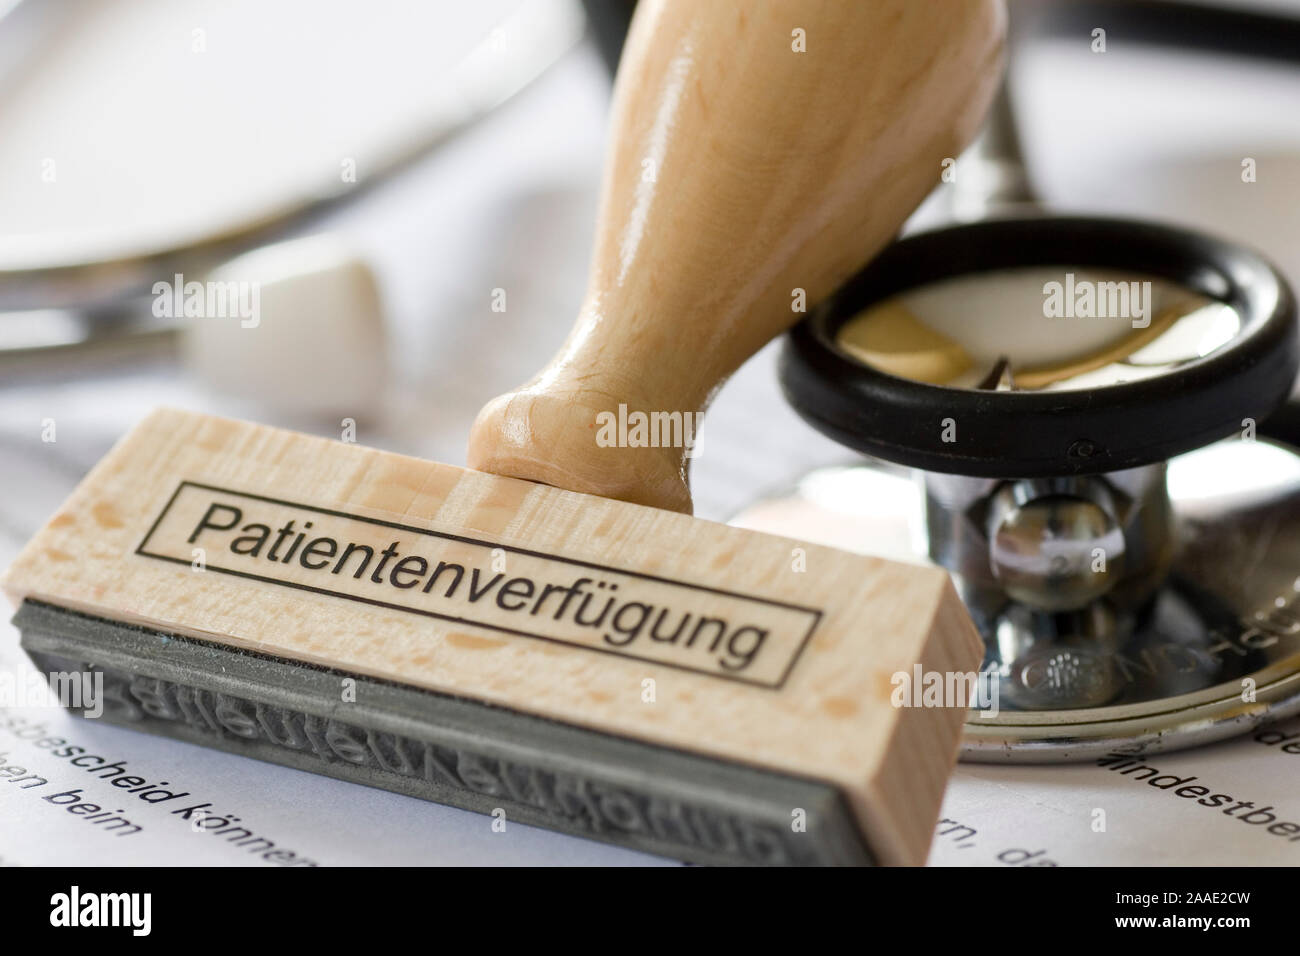 Stempel mit Aufschrift Patientenverfügung Balatonfüred in Krankenkassenunterlagen und einem Stethoskop Stockfoto